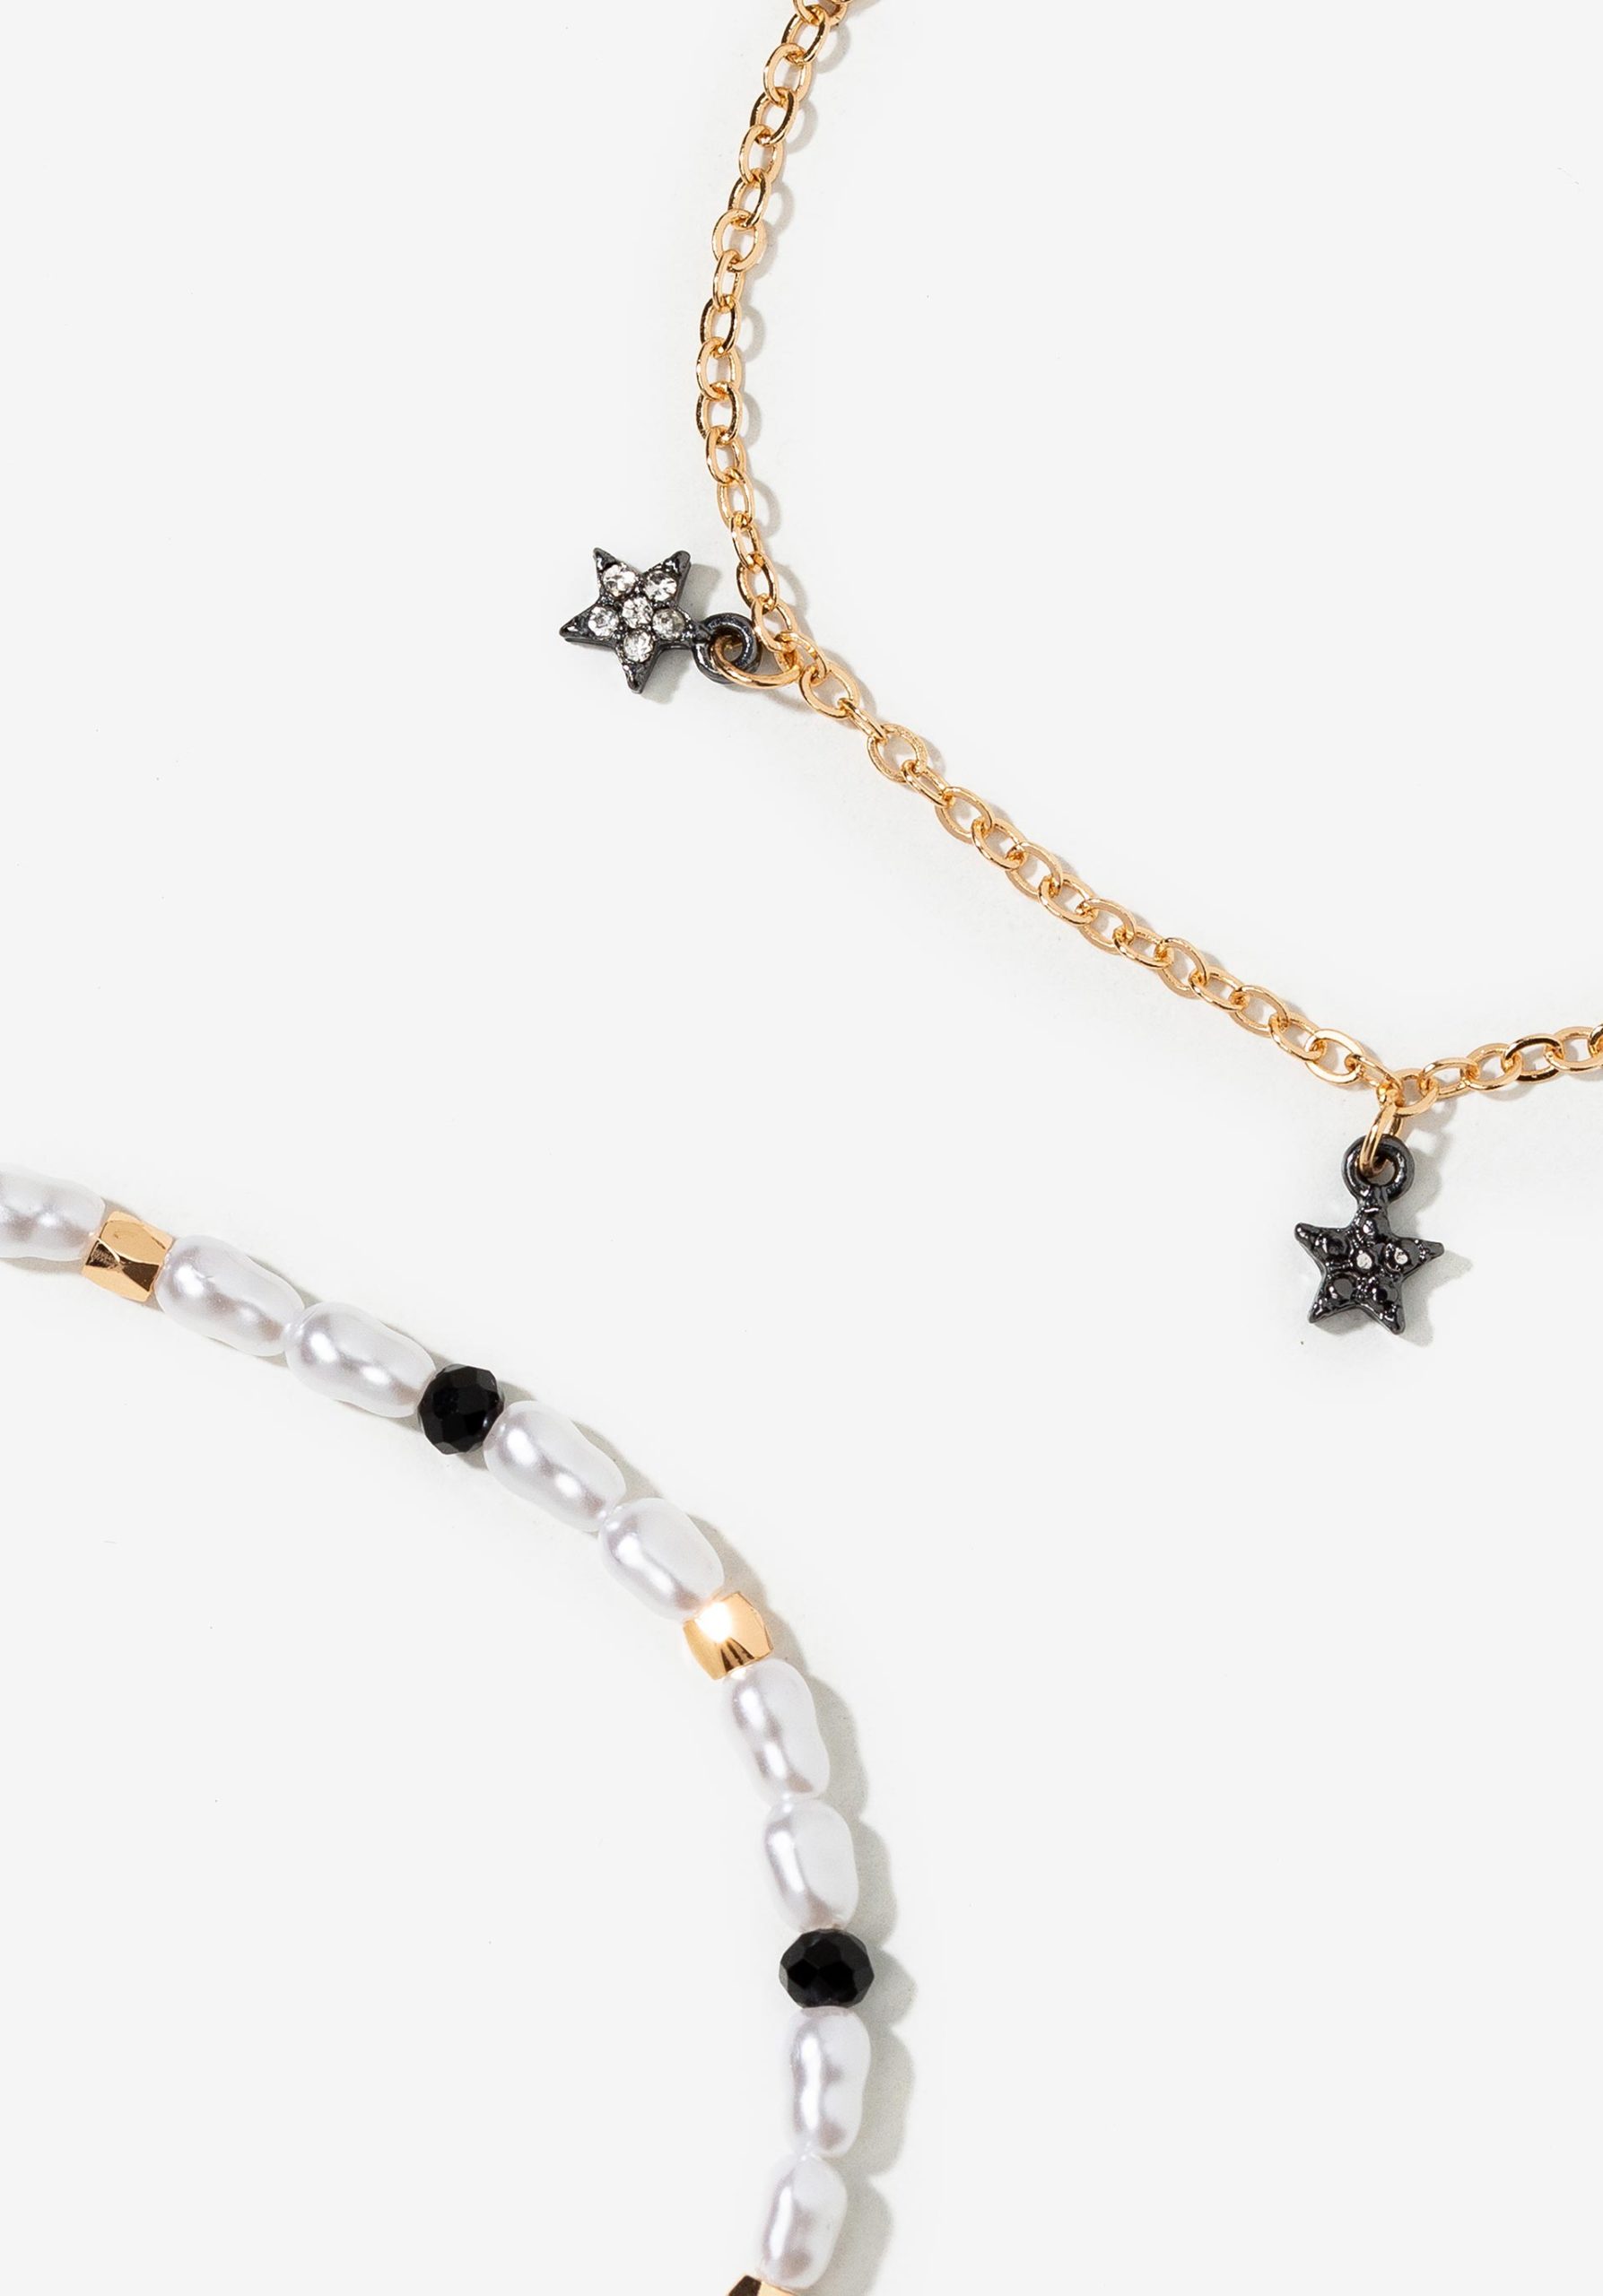 Pack de dos pulseras de perlas y estrellas, modelo 71006877 de Vilanova.